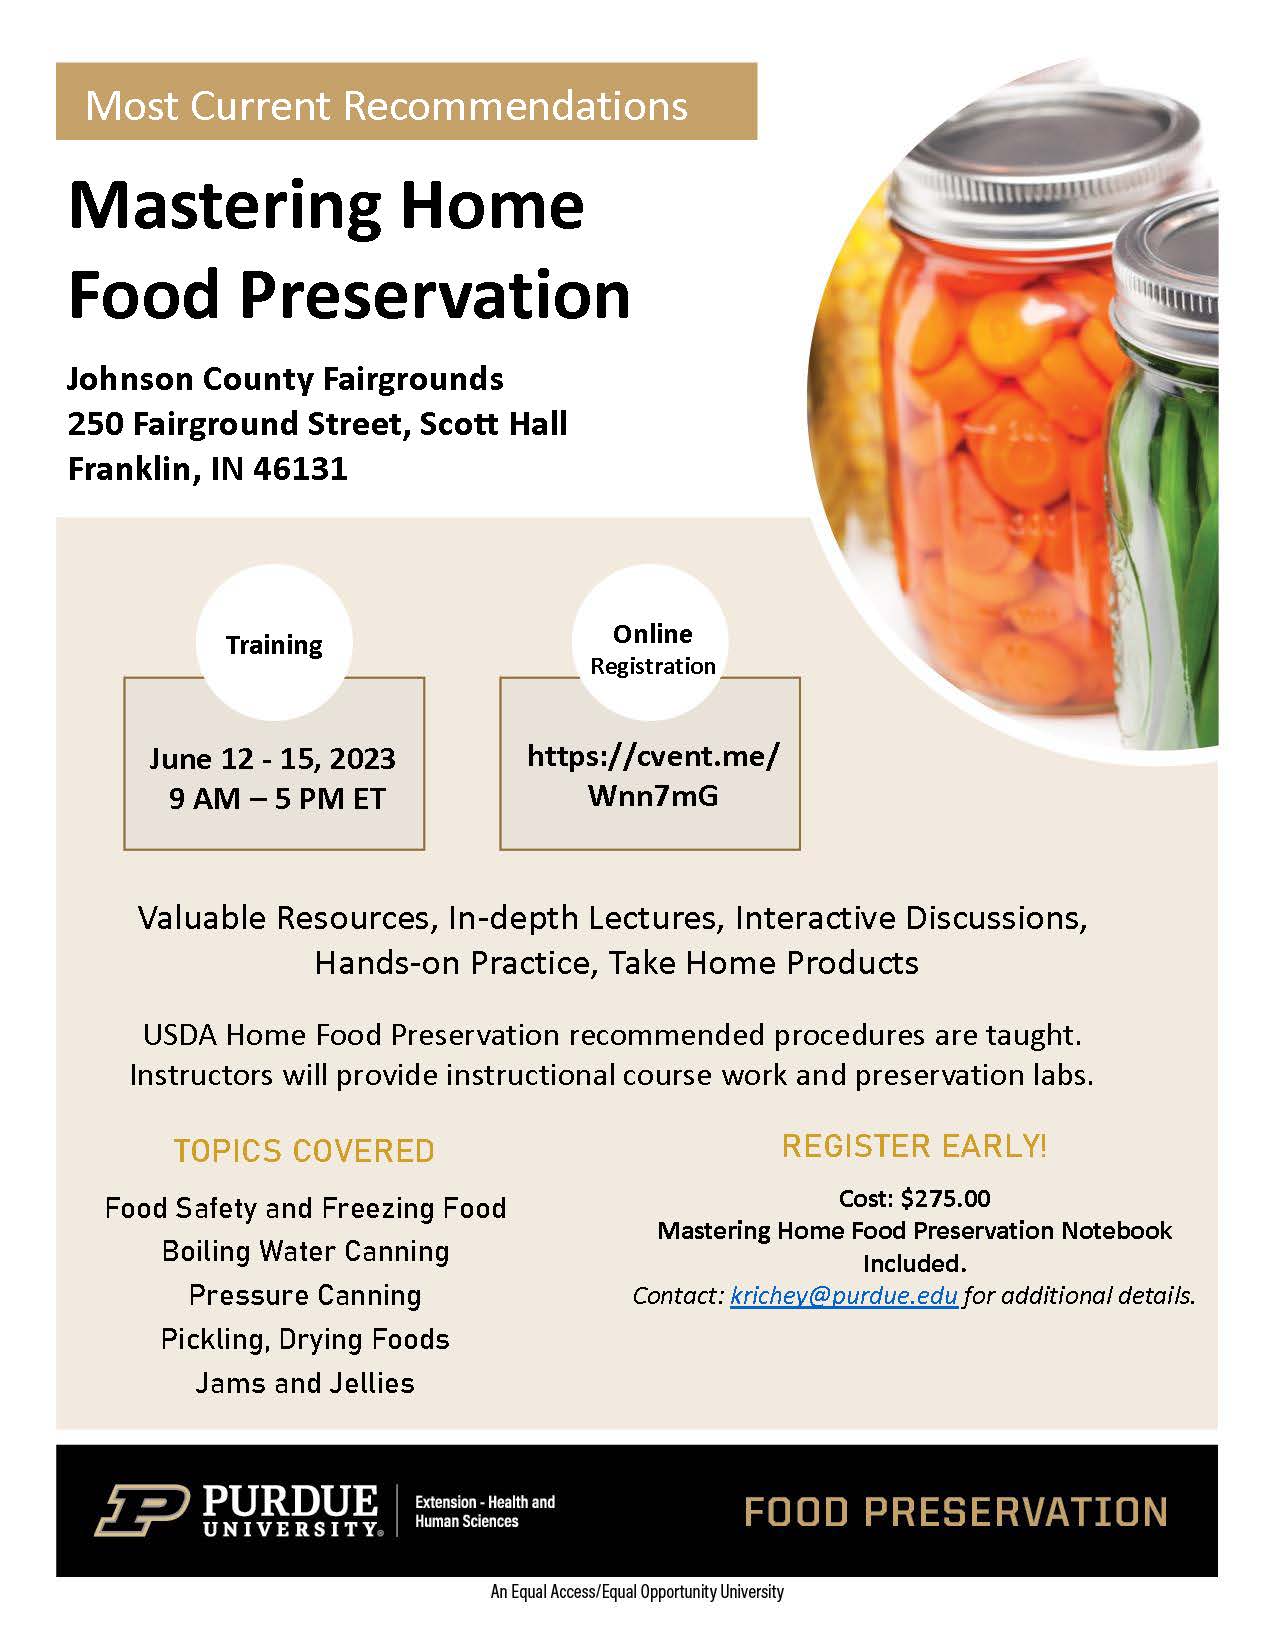 Mastering Home Food Preservation Flyer